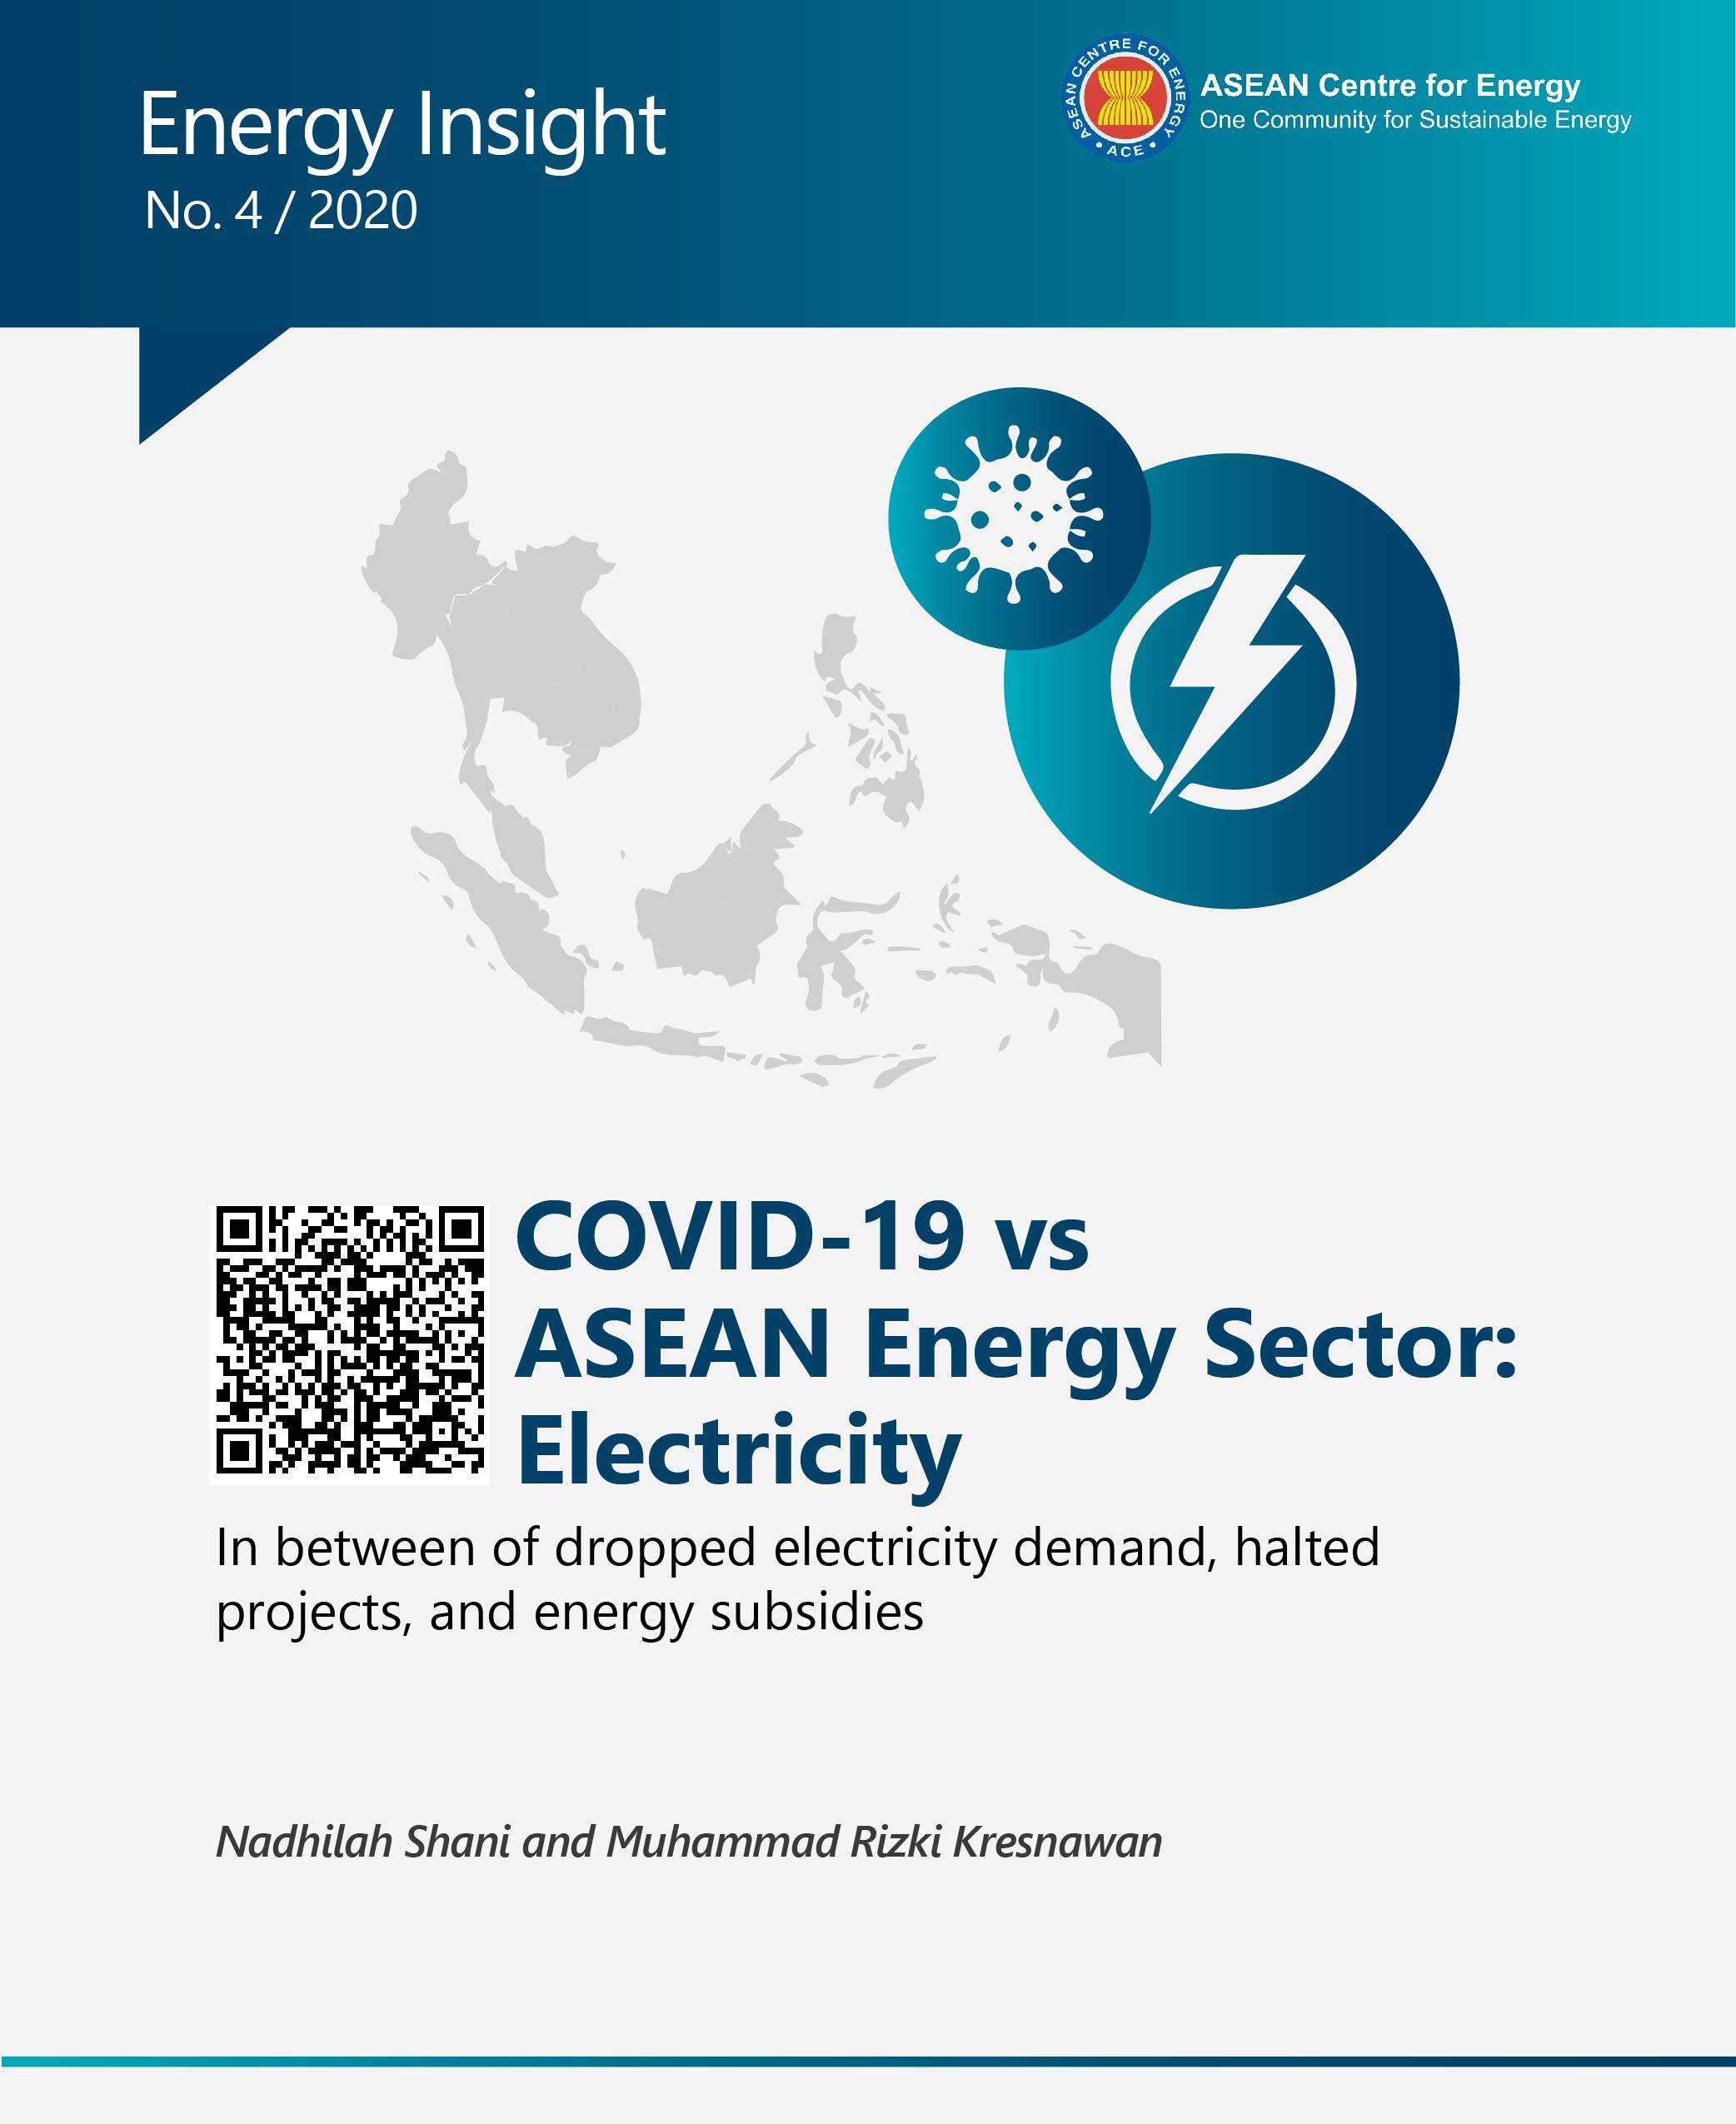 COVID 19 vs Electricity